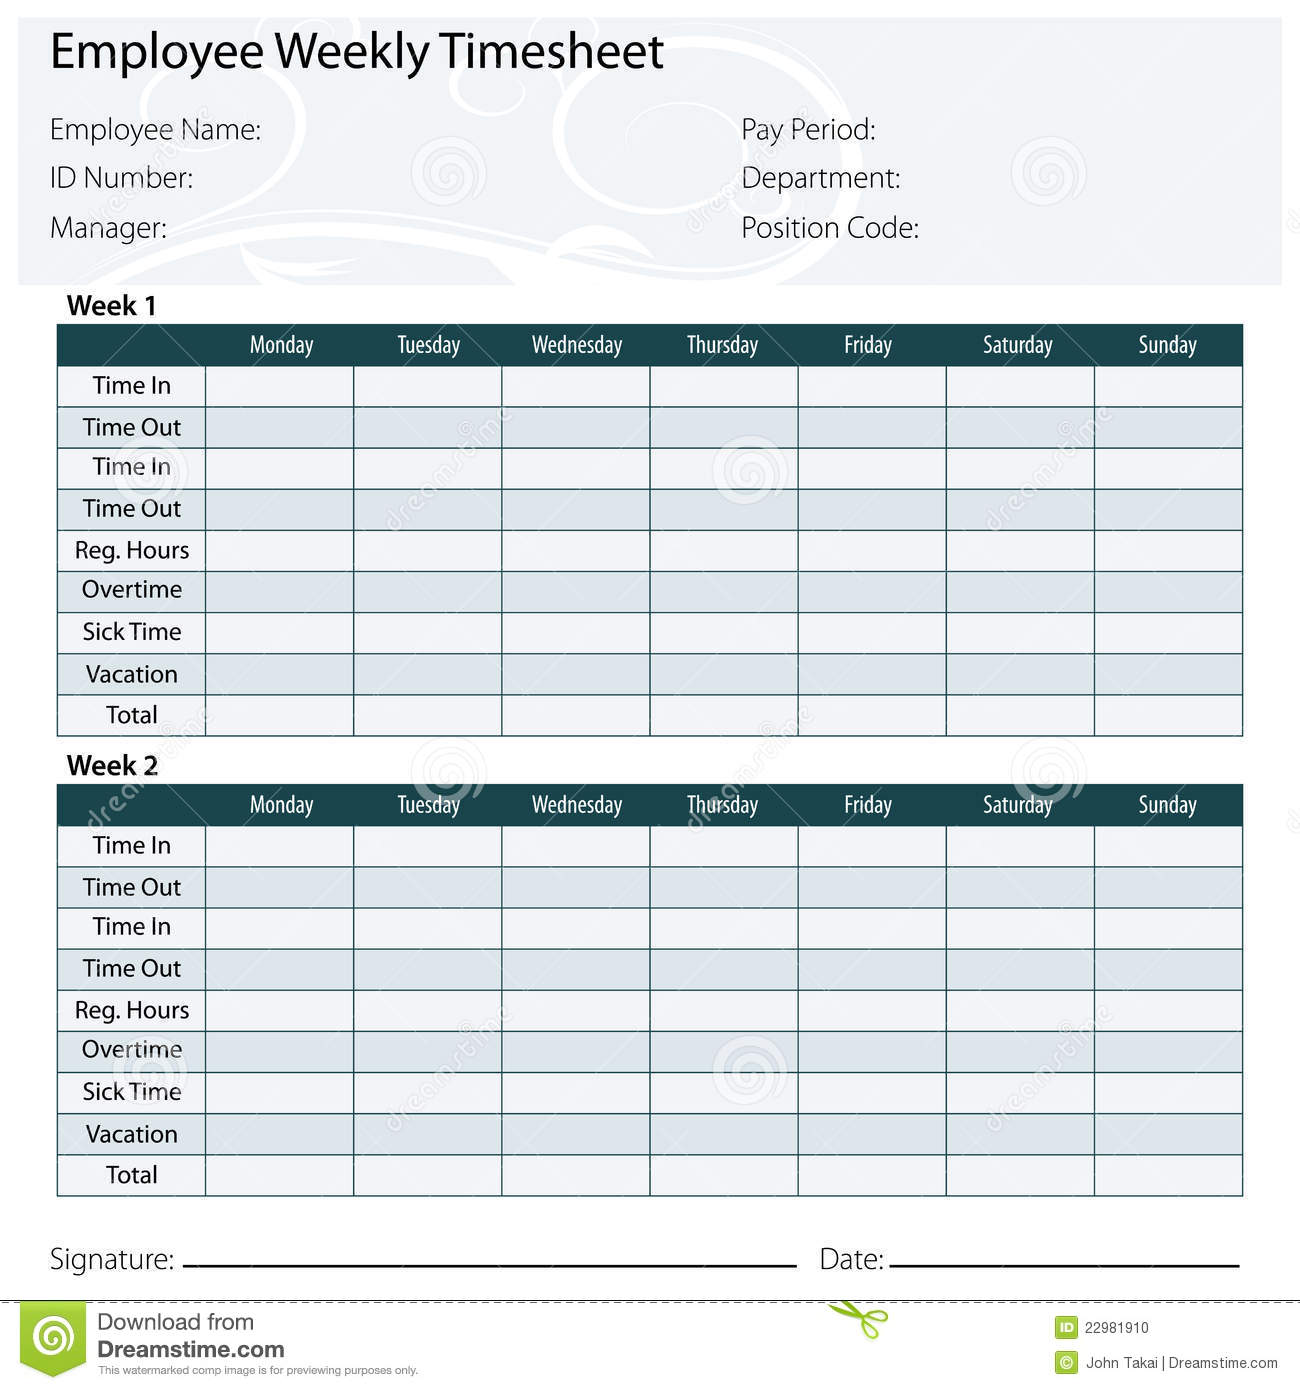 Employee Timesheet Template Stock Photo   Image  22981910